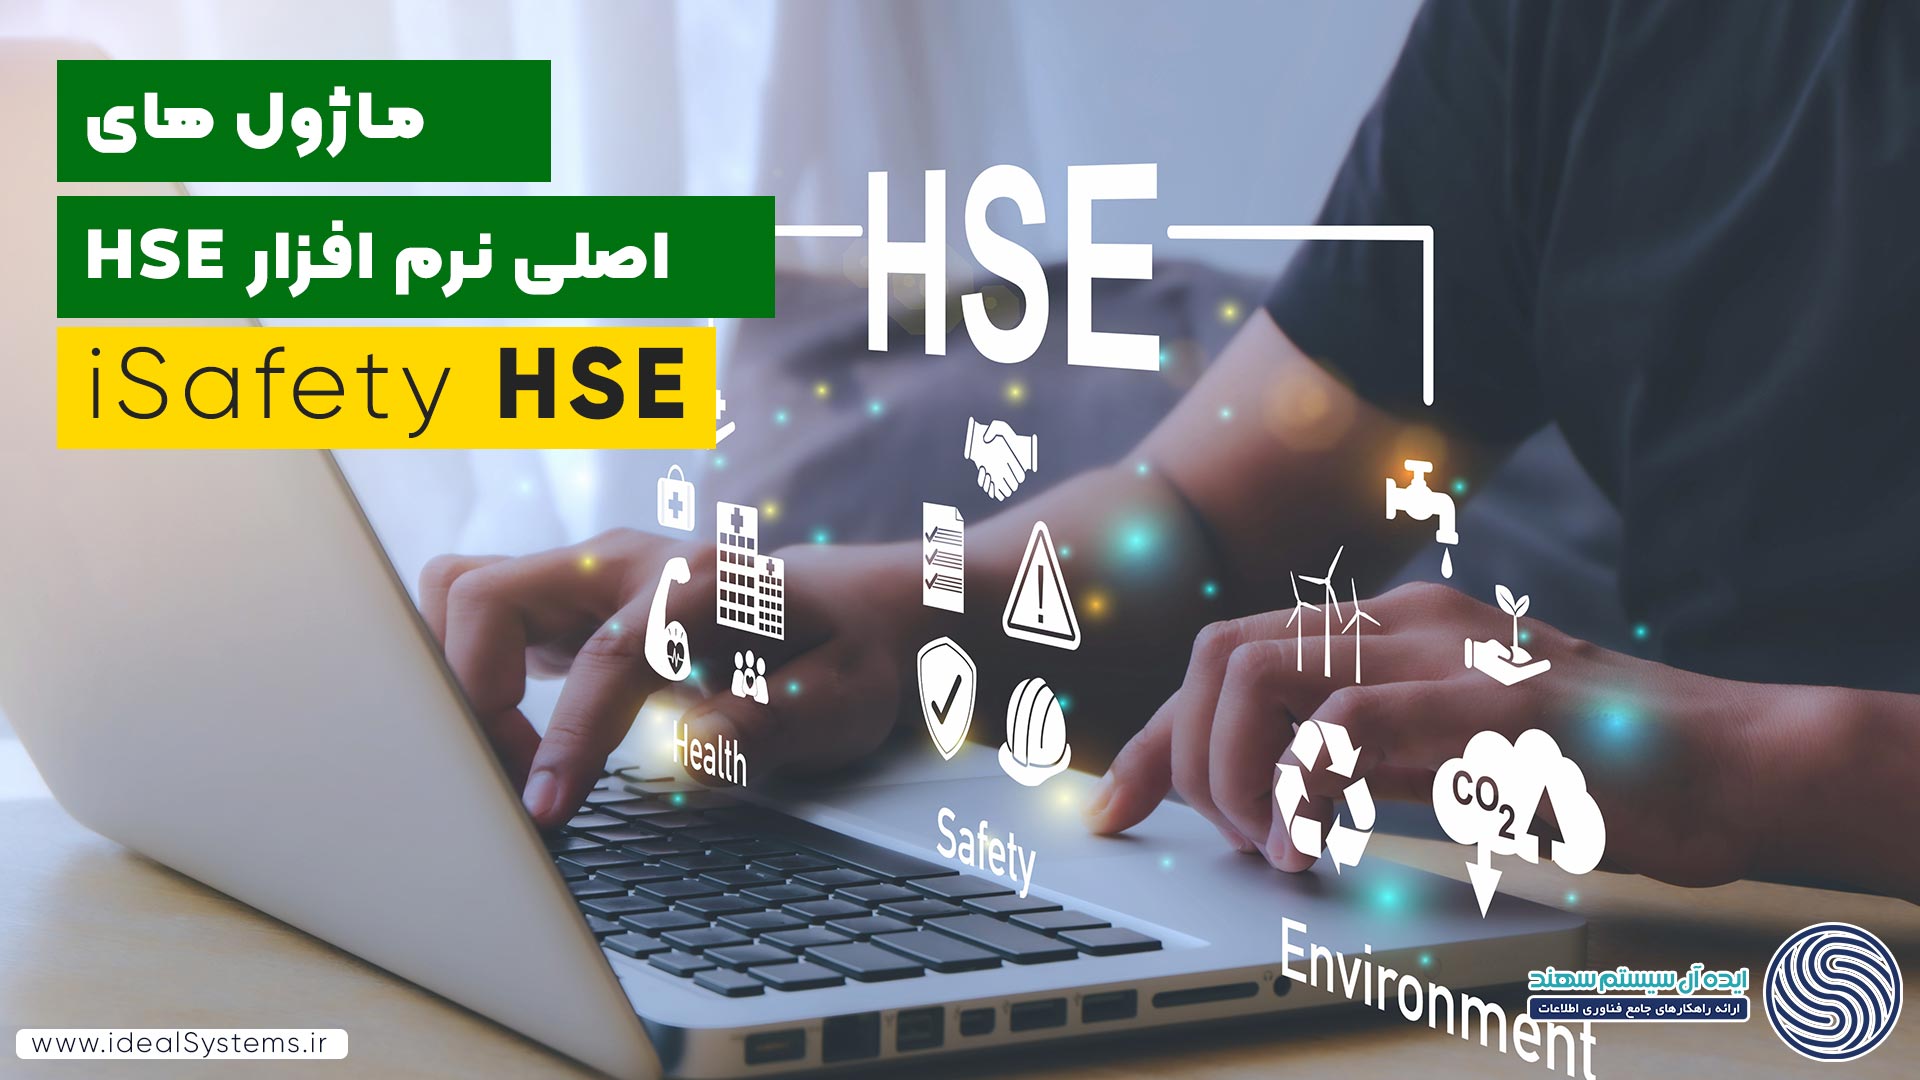 ماژول های اصلی نرم افزار HSE